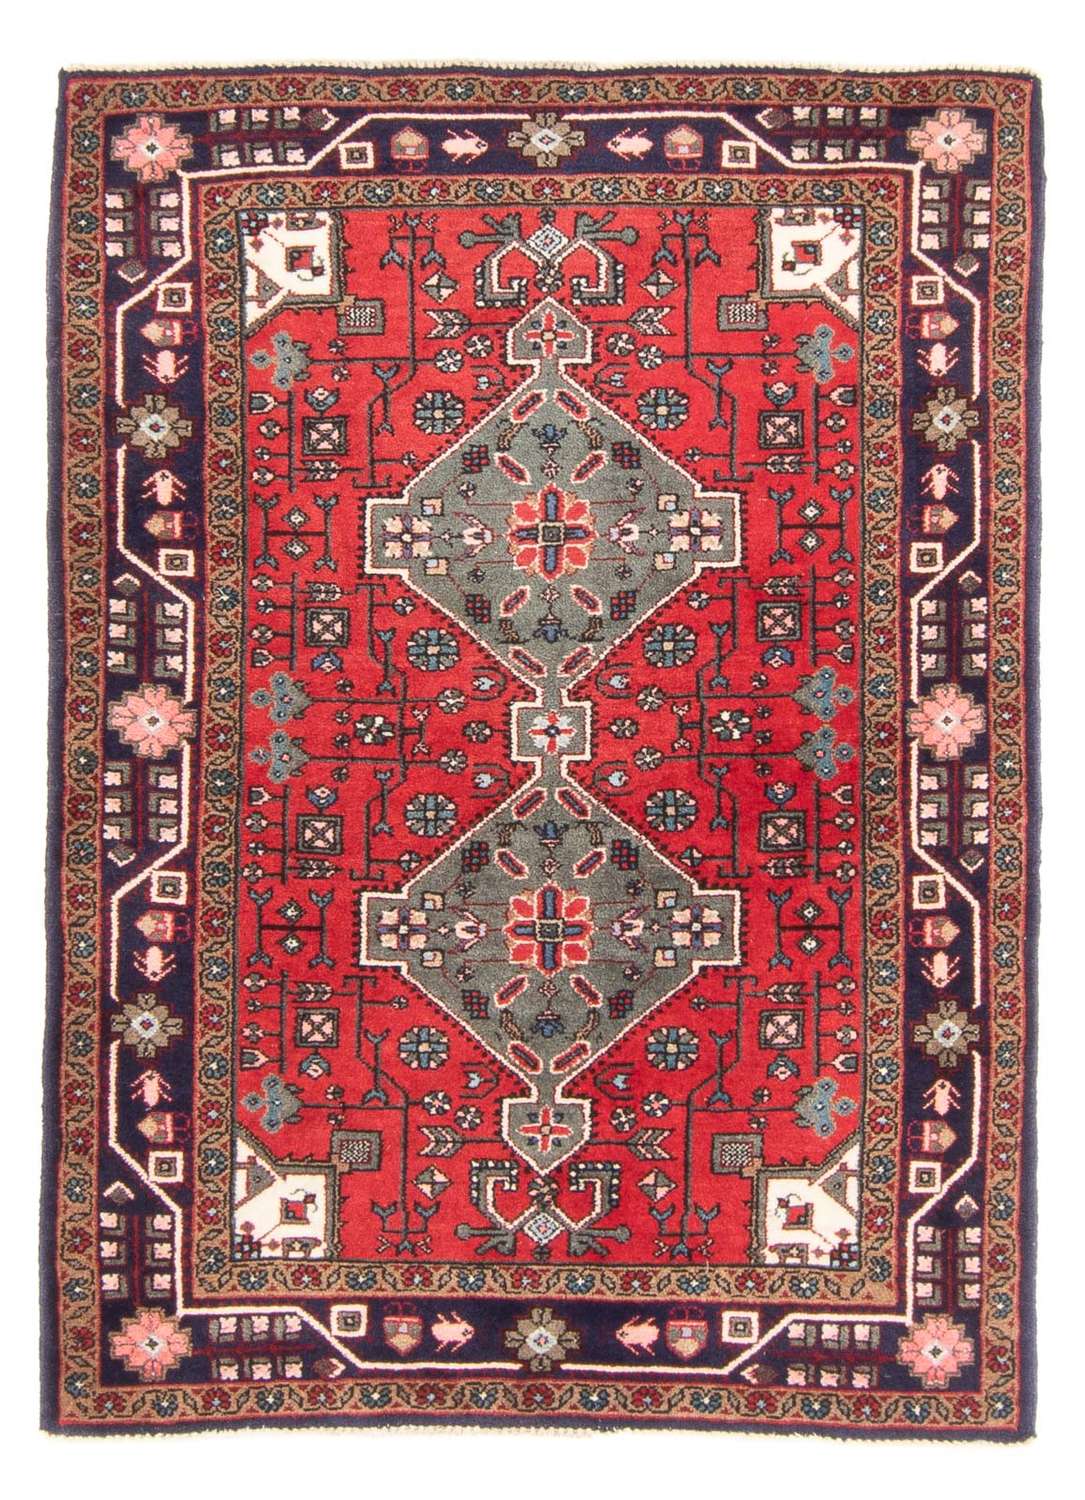 Tapis persan - Nomadic - 150 x 107 cm - rouge